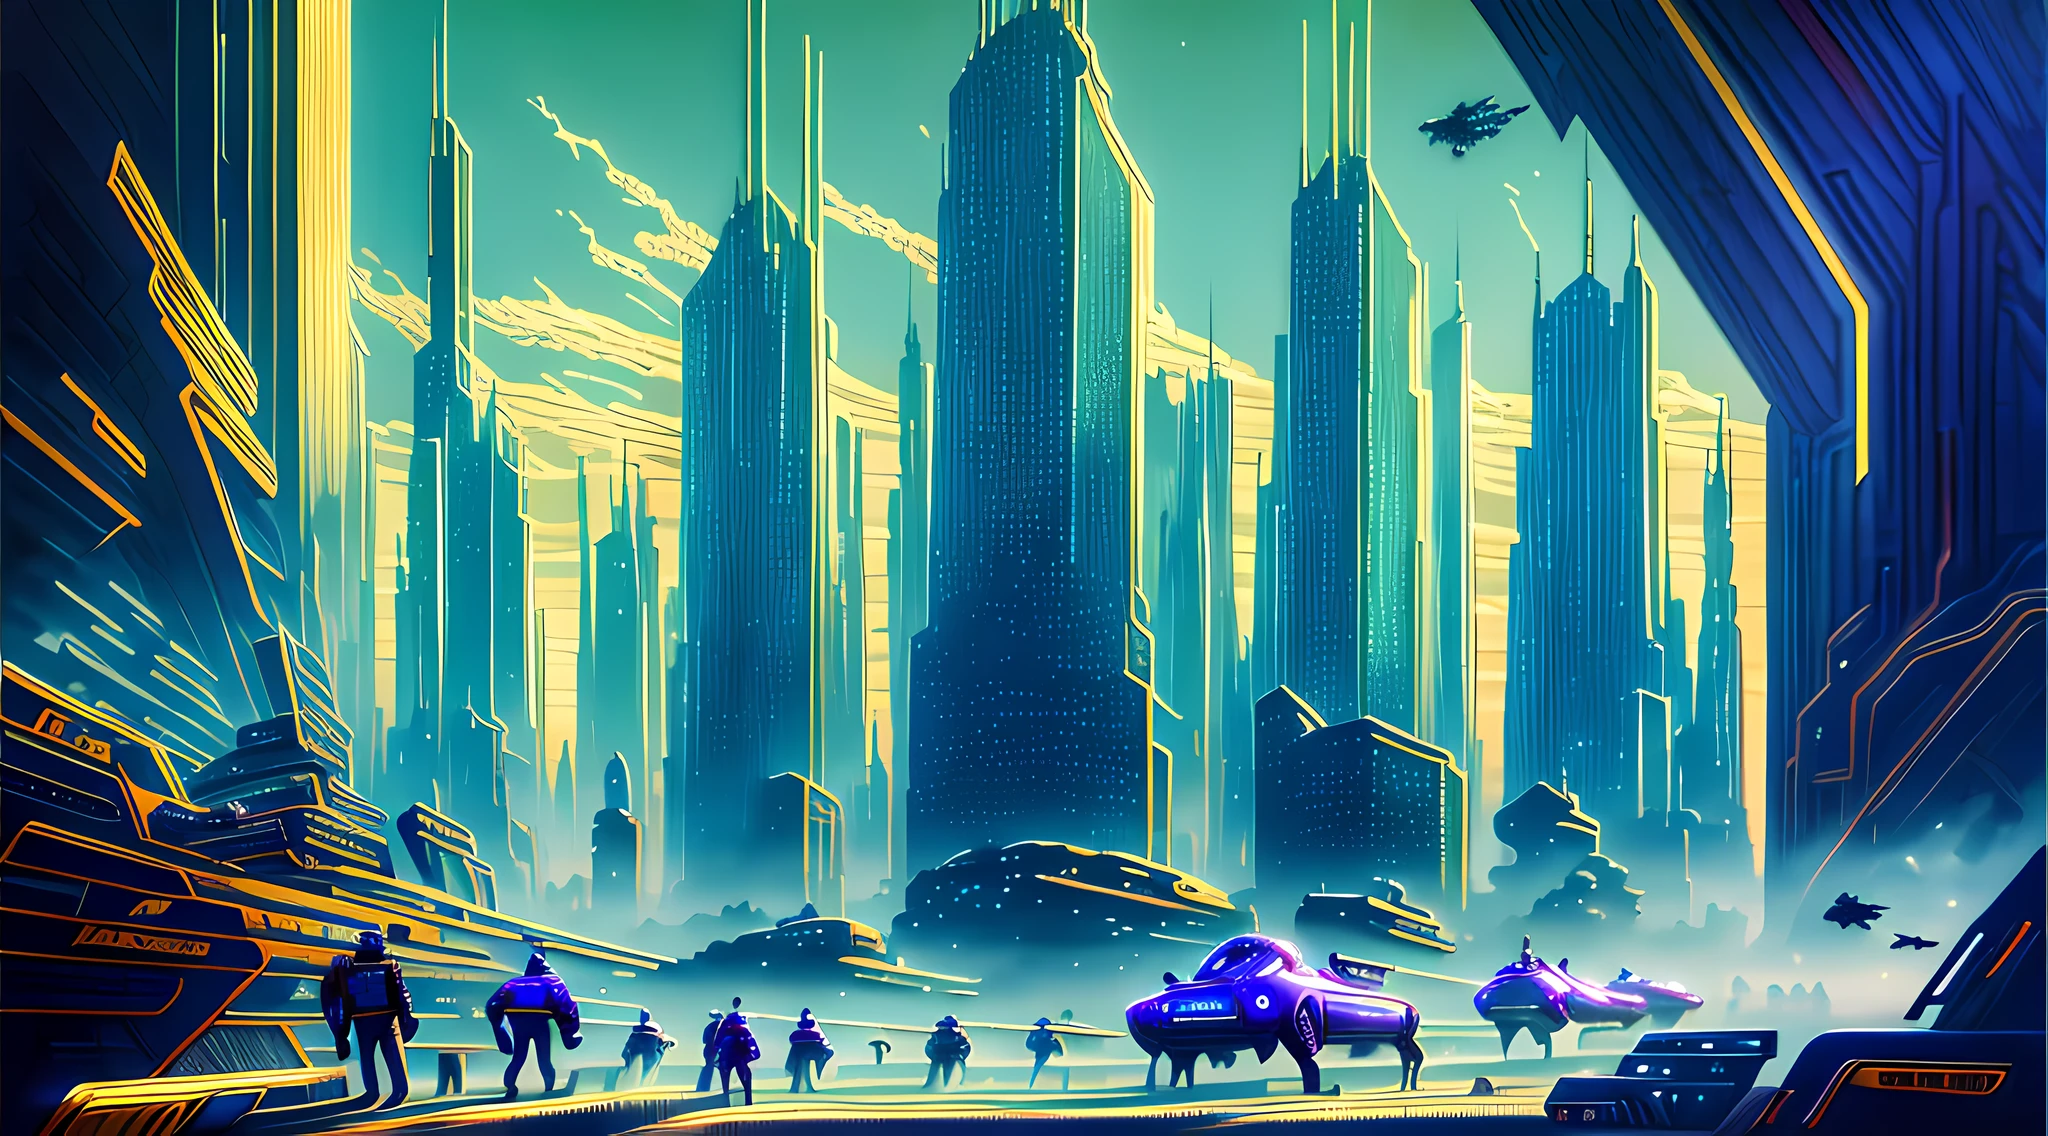 Ein Ölgemälde einer futuristischen Stadtlandschaft, mit hoch aufragenden Wolkenkratzern und fliegenden Fahrzeugen, die den Rahmen füllen. Die Farben sind hell und lebendig, mit Blautönen, Grün, und Lila dominiert die Szene. Im Vordergrund, Man sieht eine Gruppe von Menschen auf einen Riesen zugehen, leuchtende Pyramide.